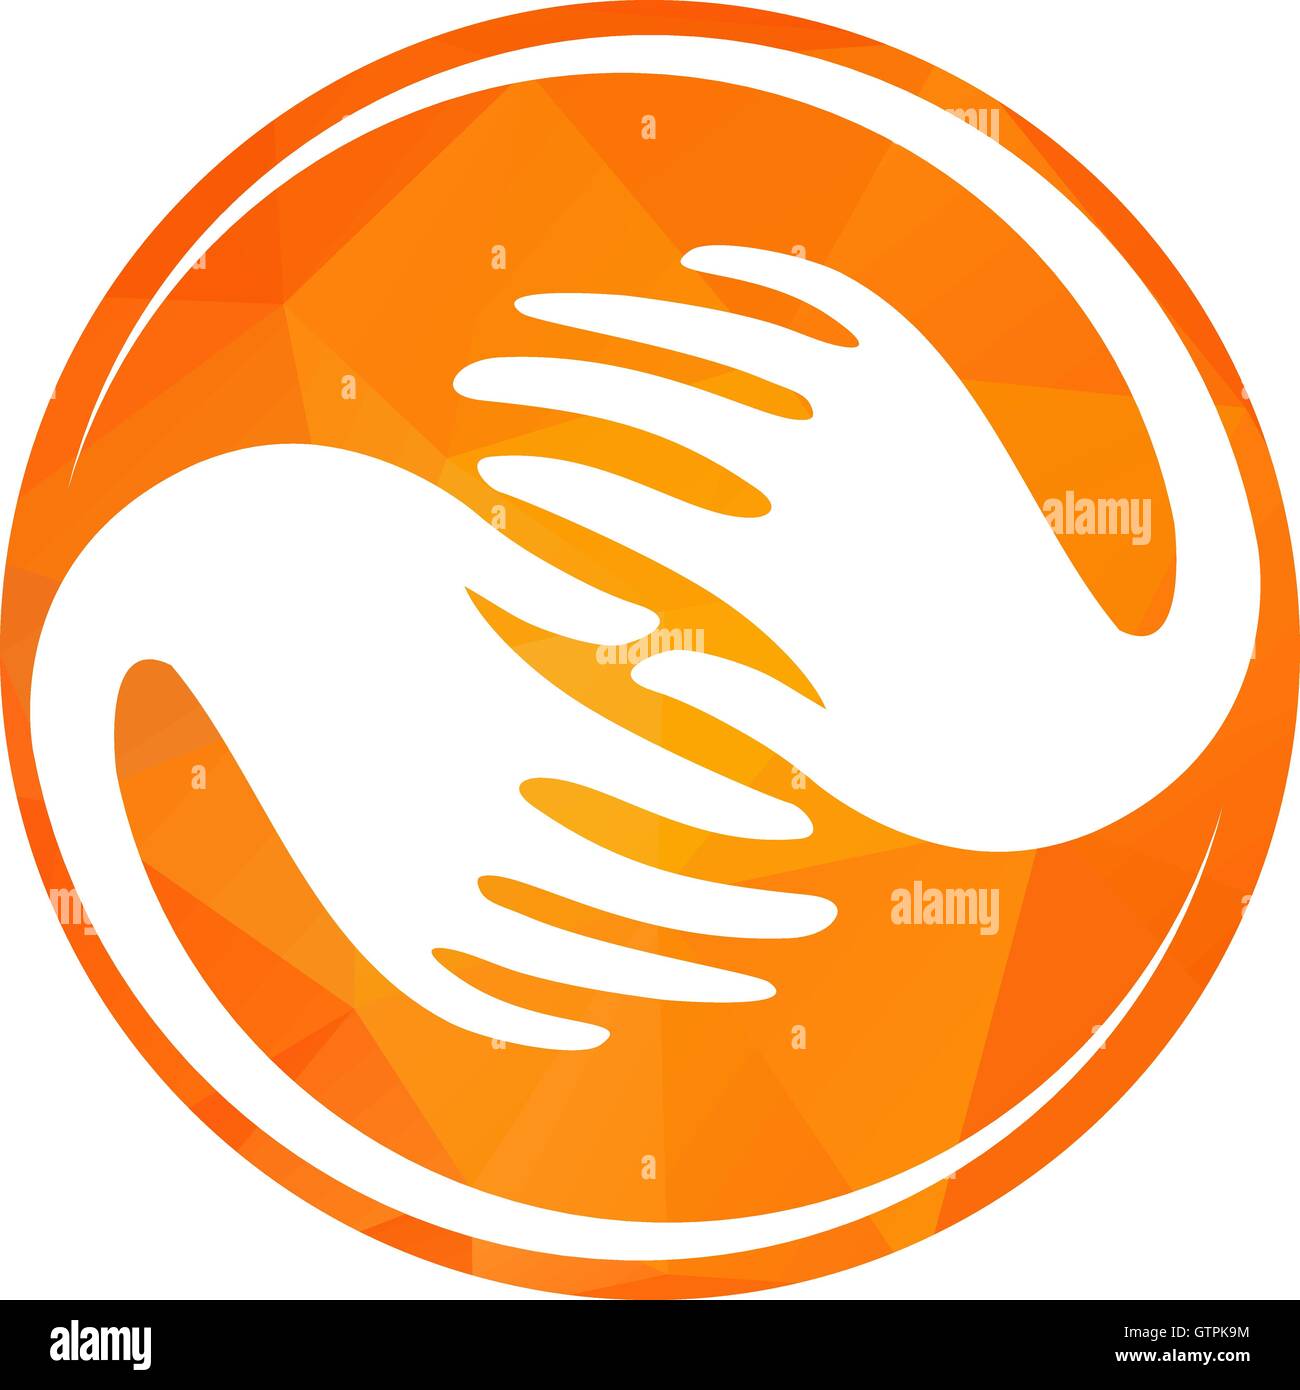 Isolierte gelbe Runde Logo. Weiße Hände in einem gelben Kreis. Globale Verbindung Zeichen. Globalisierung-Symbol. Hilfsbereite Menschen. Nächstenliebe Stock Vektor